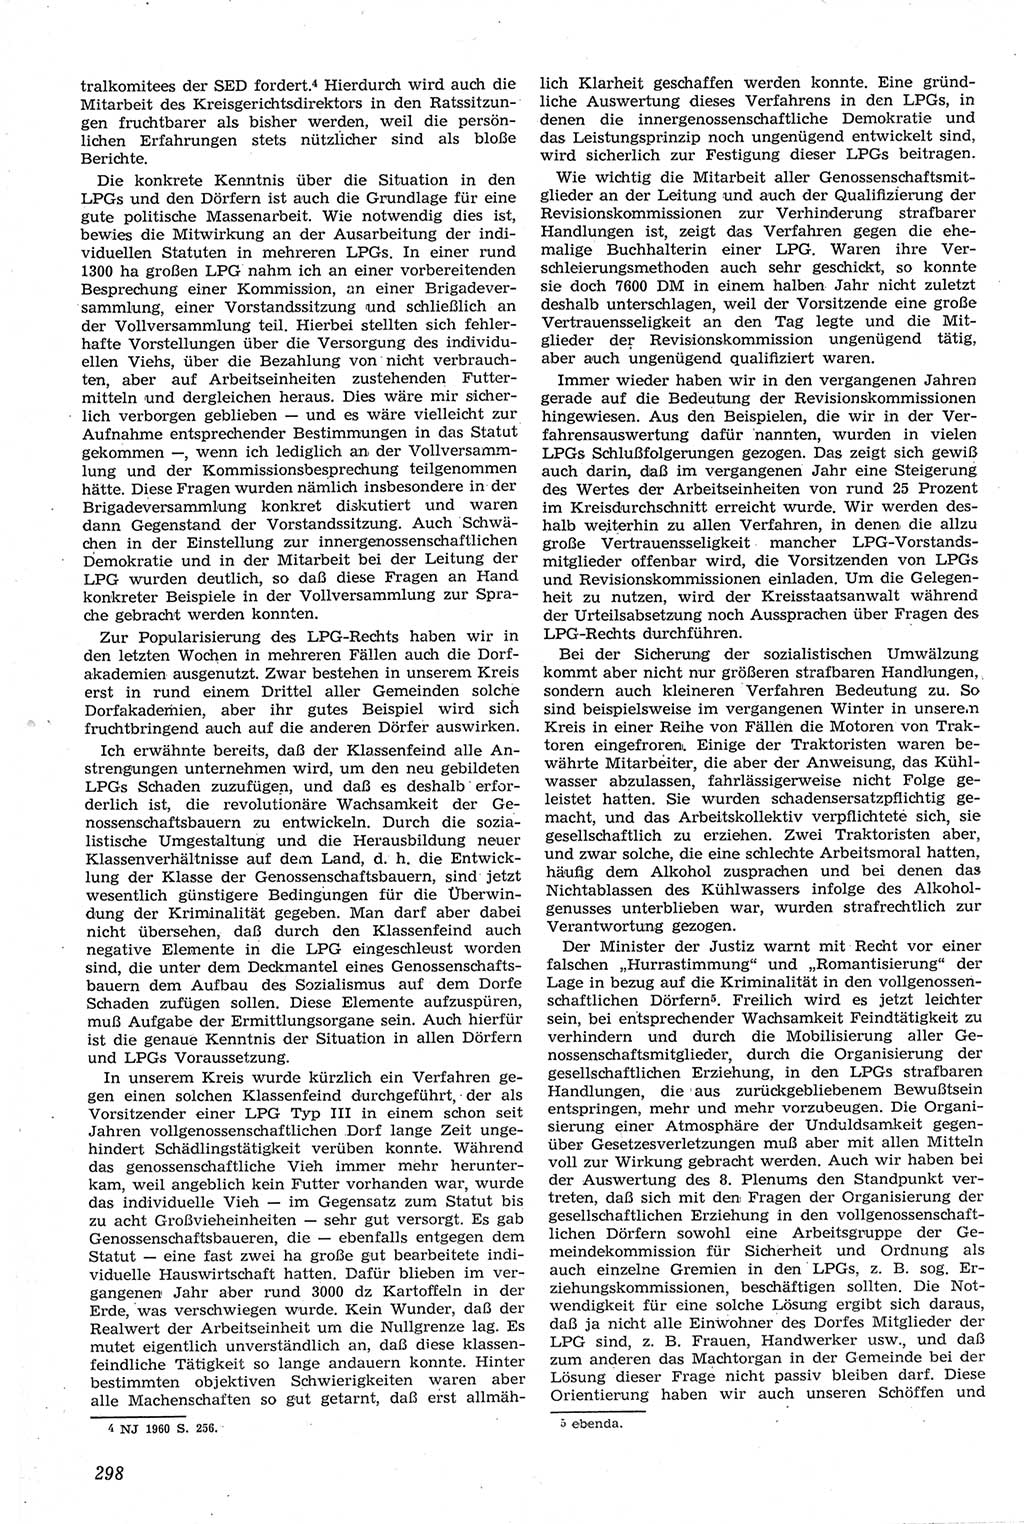 Neue Justiz (NJ), Zeitschrift für Recht und Rechtswissenschaft [Deutsche Demokratische Republik (DDR)], 14. Jahrgang 1960, Seite 298 (NJ DDR 1960, S. 298)